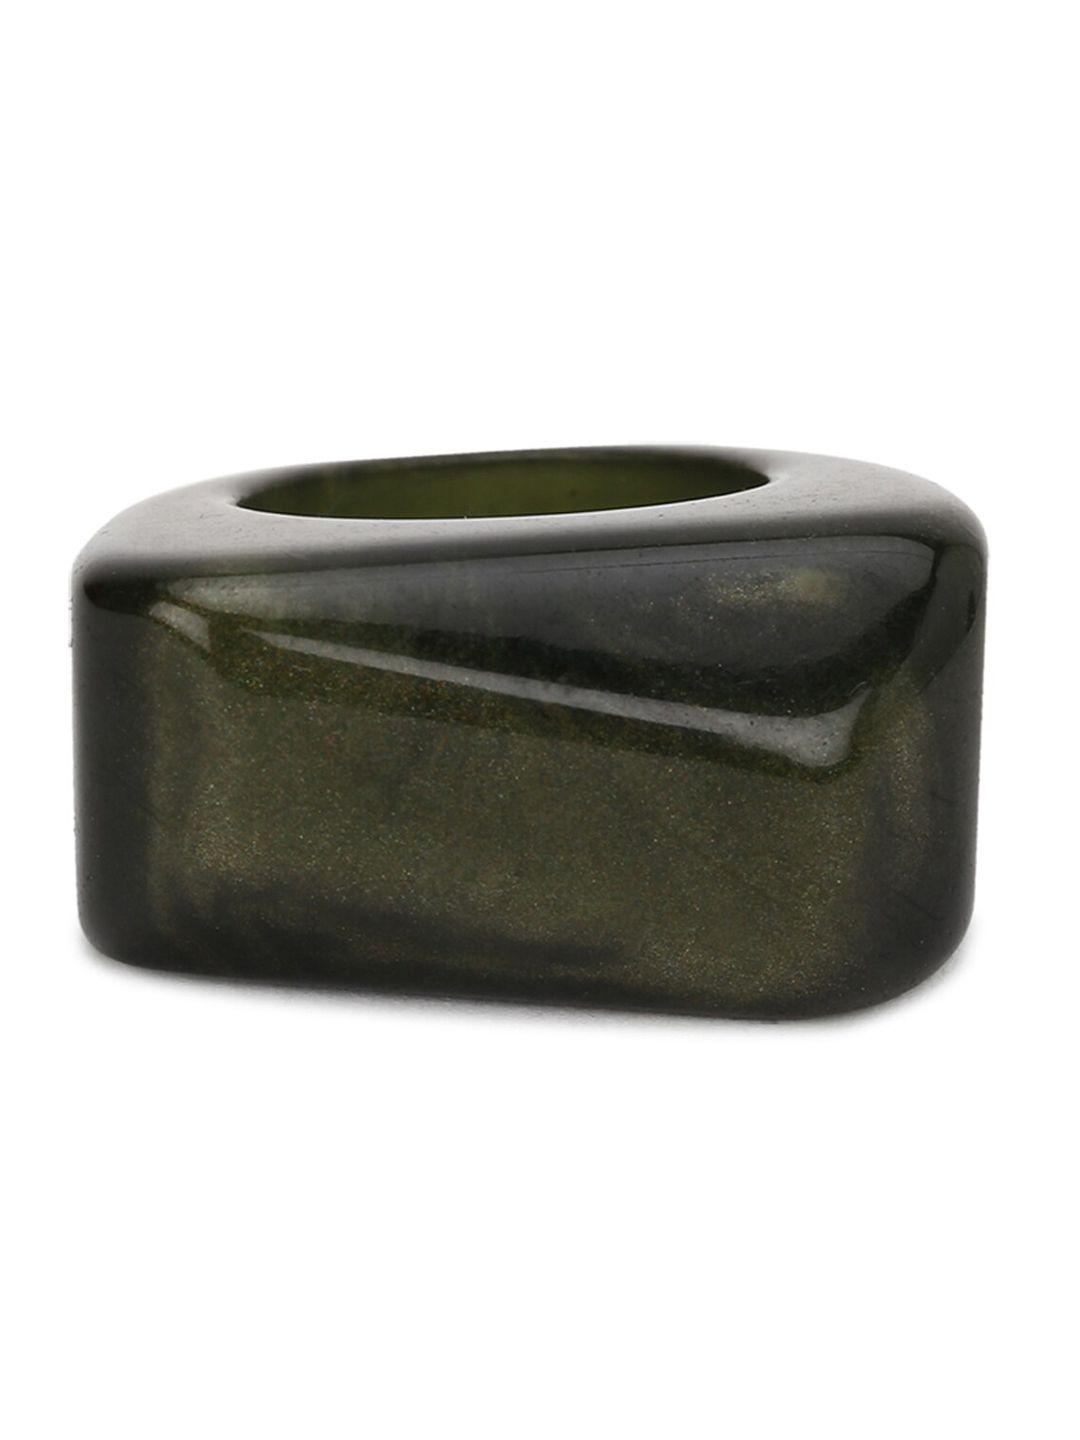 forever-21-green-patterned-resin-finger-ring